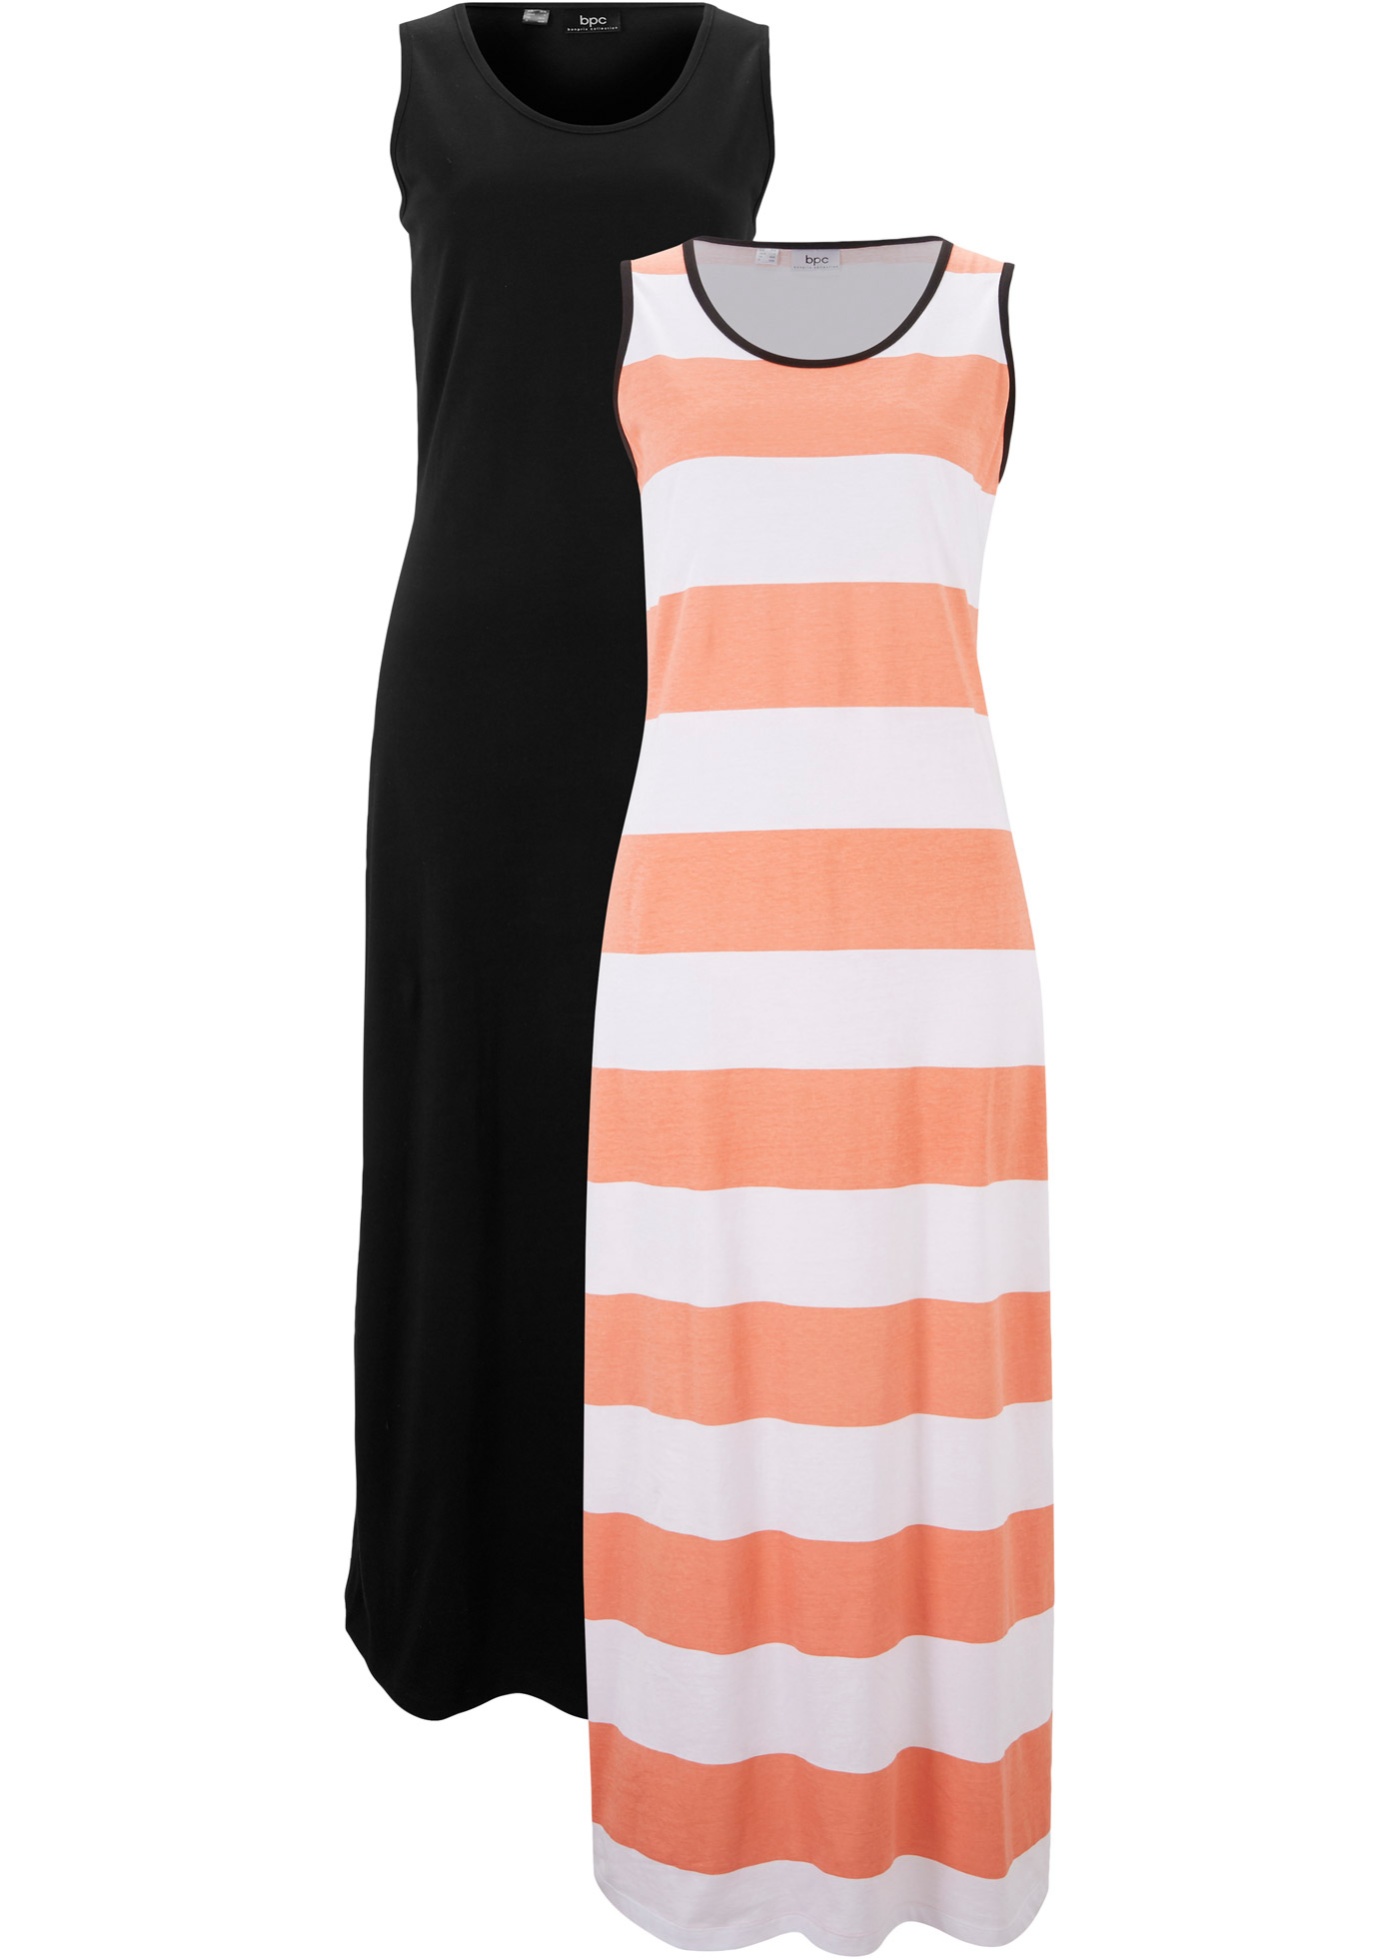 Ärmelloses Jersey-Kleid mit Rundhals-Ausschnitt, Doppelpack (92396595) in lachs/weiß getreift+schwarz uni